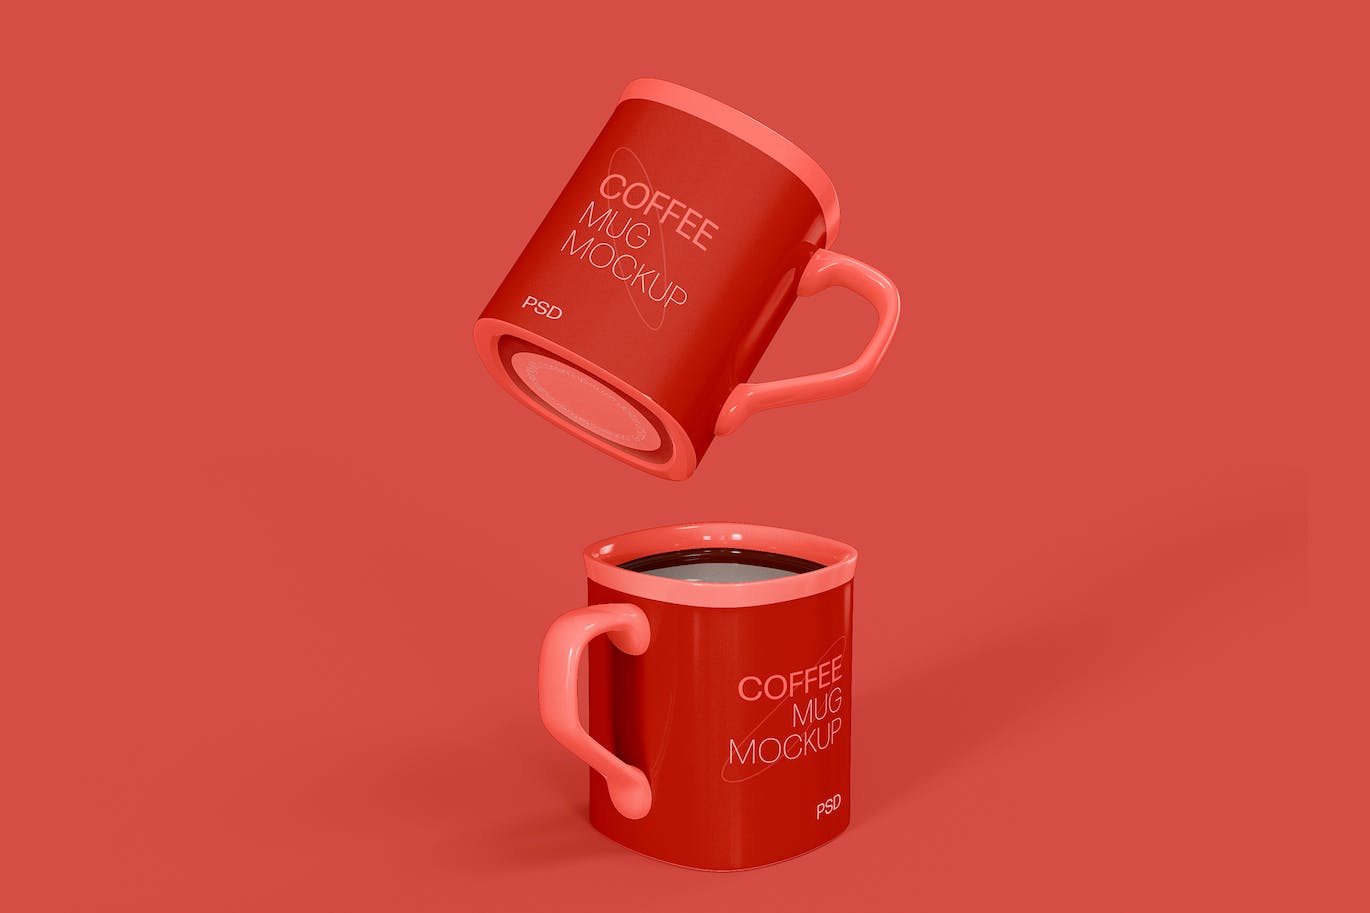 陶瓷咖啡马克杯杯身设计样机模板v4 Ceramic Mugs Mockup 样机素材 第1张